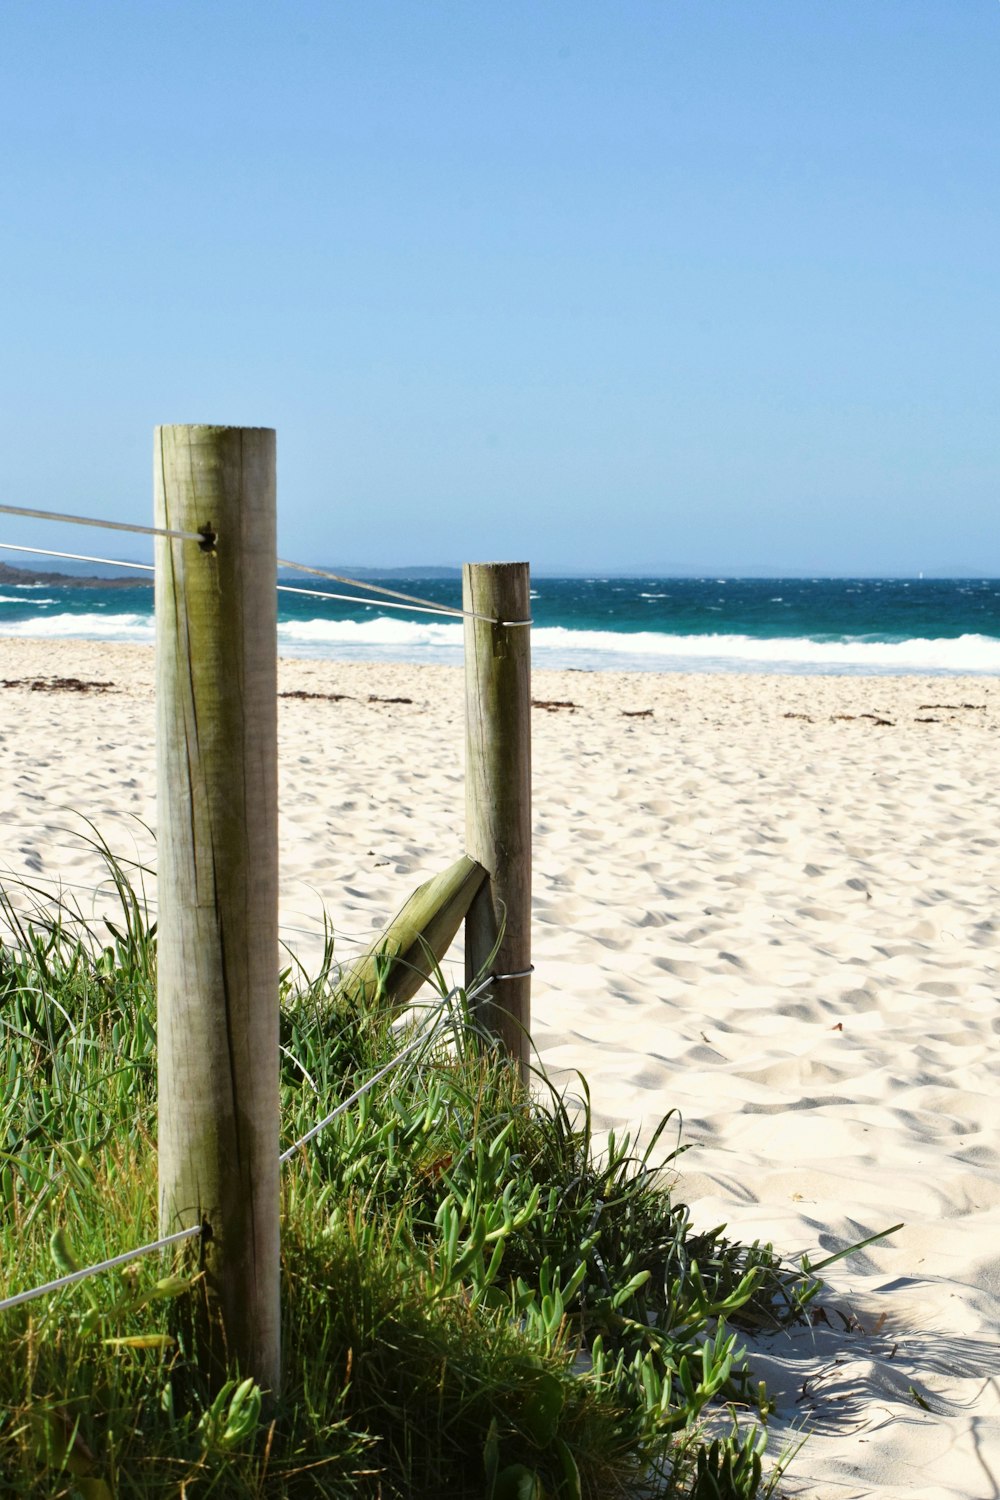 a wooden fence on a beach near the ocean